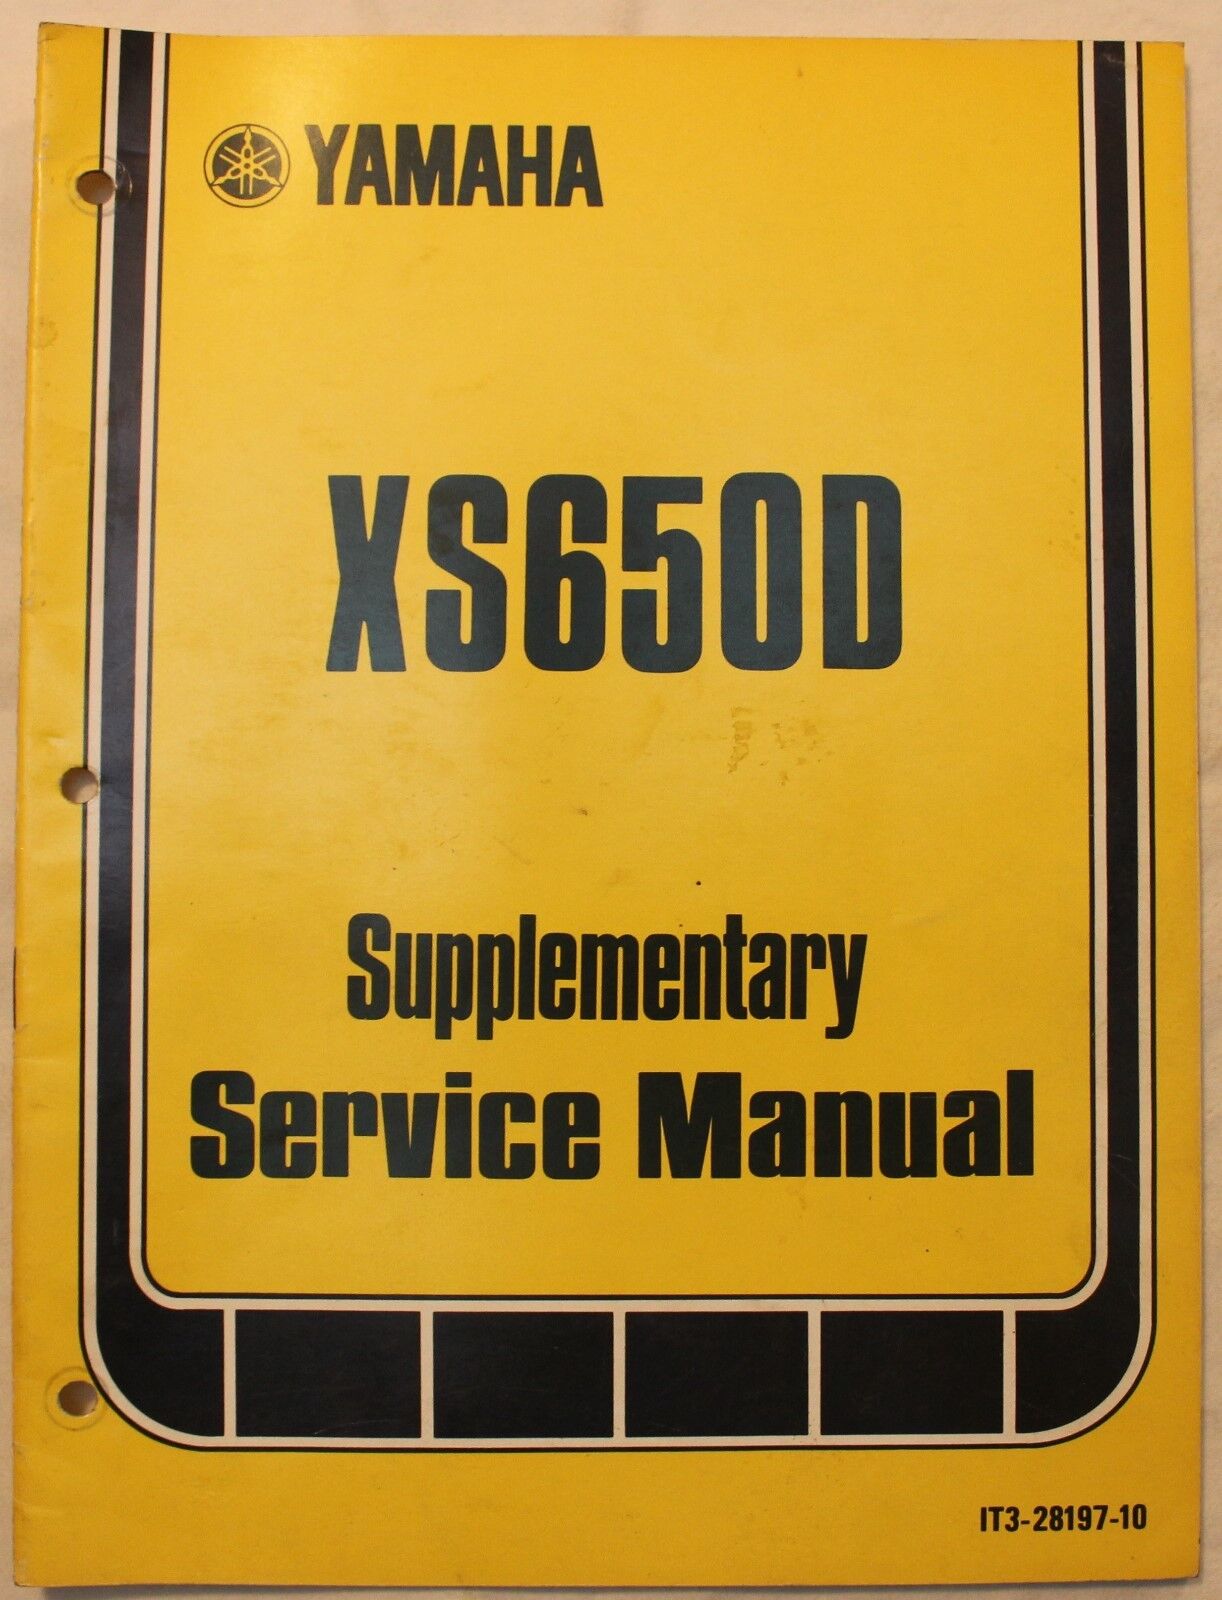 m Original 1976 Yamaha Supplementary Service Manual XS650D